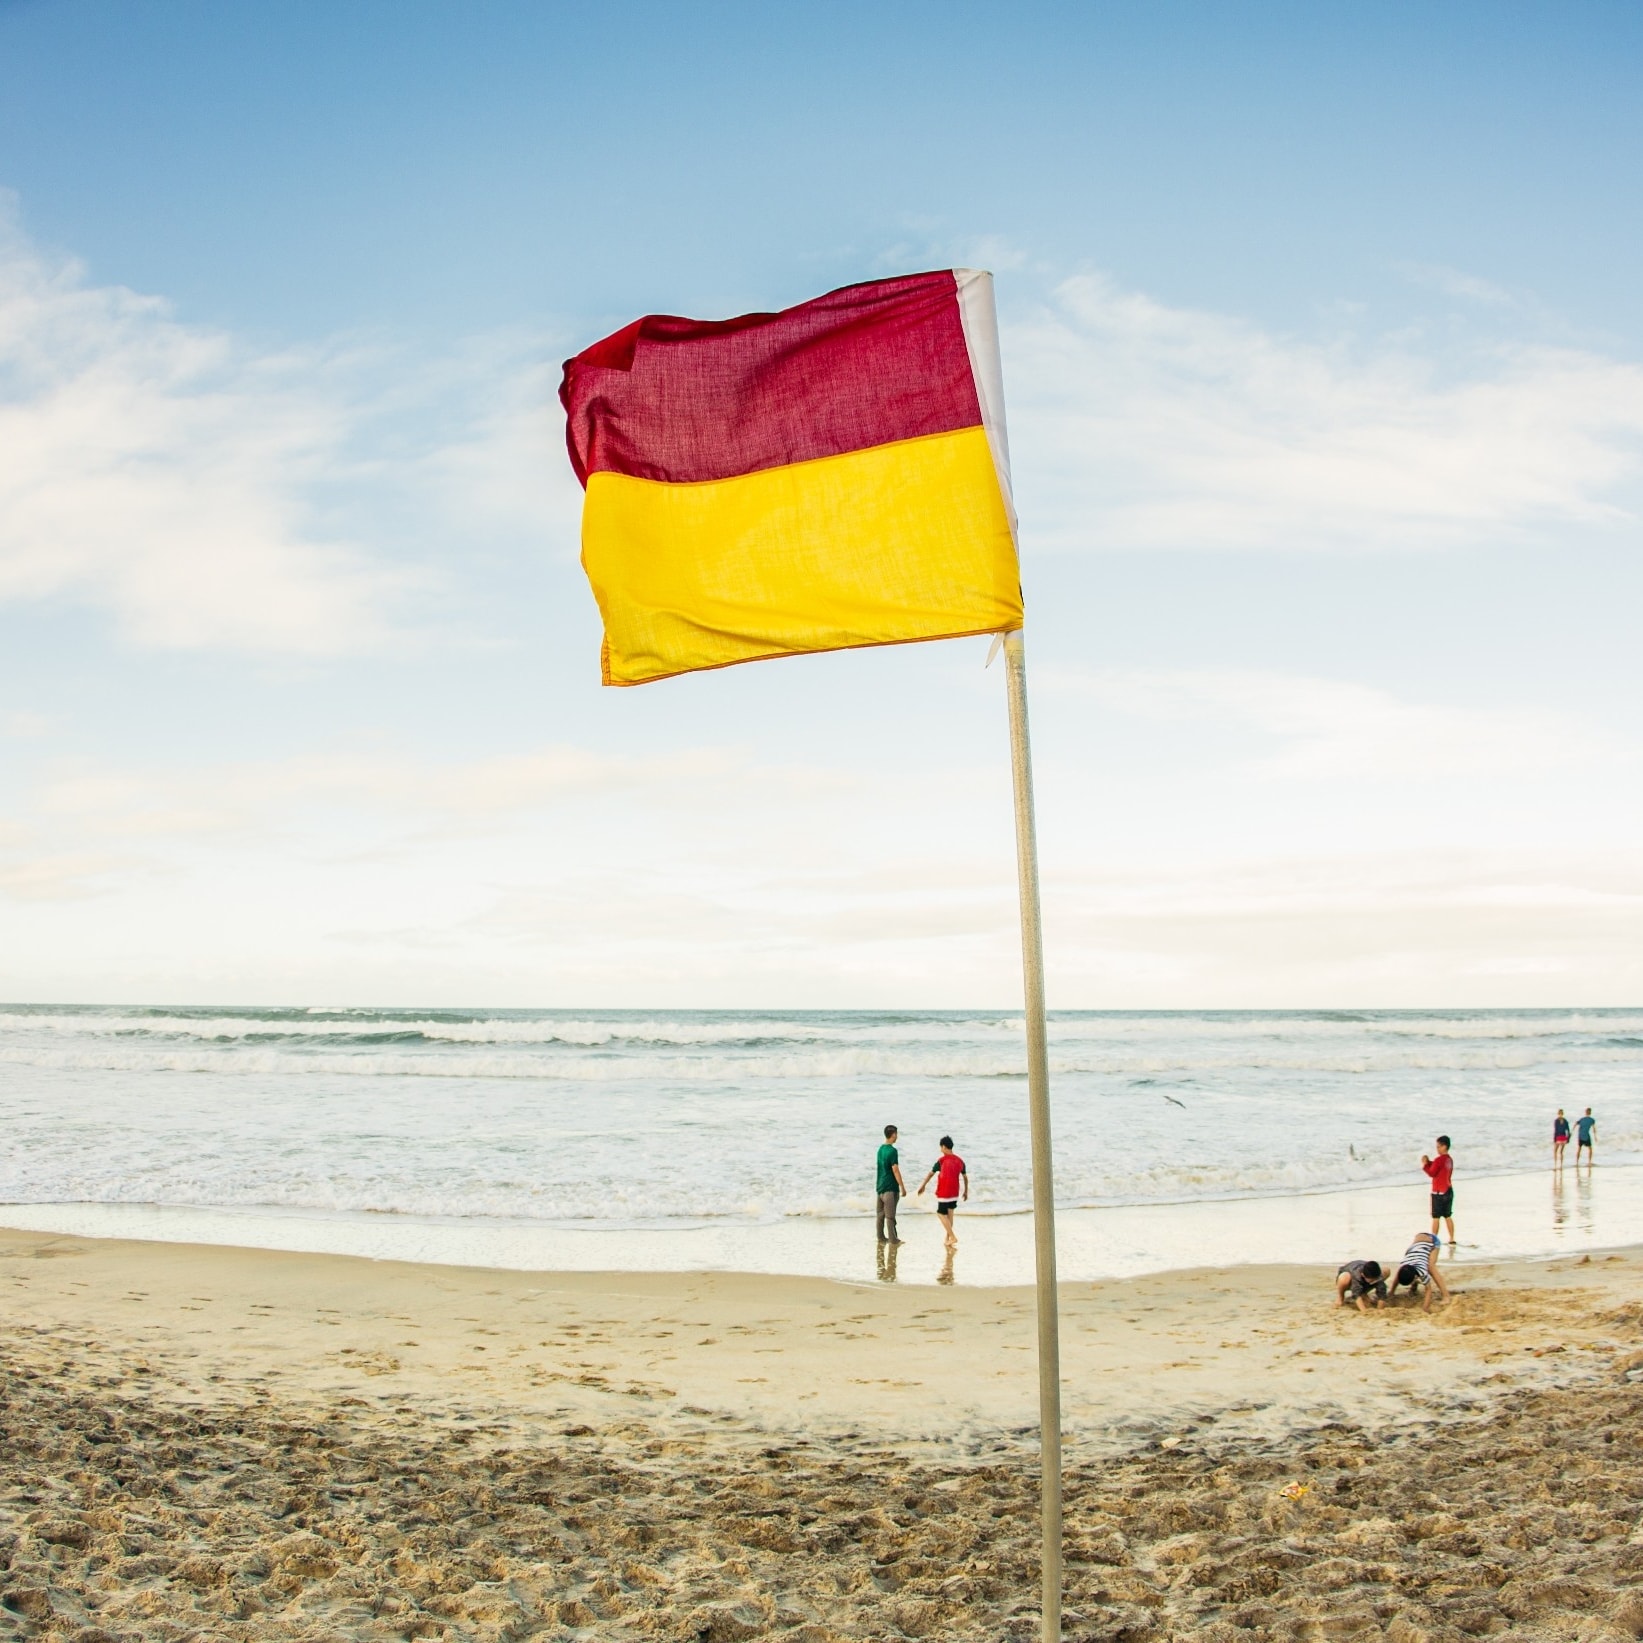 ゴールド・コーストではためく赤と黄色の旗 © Tourism Australia